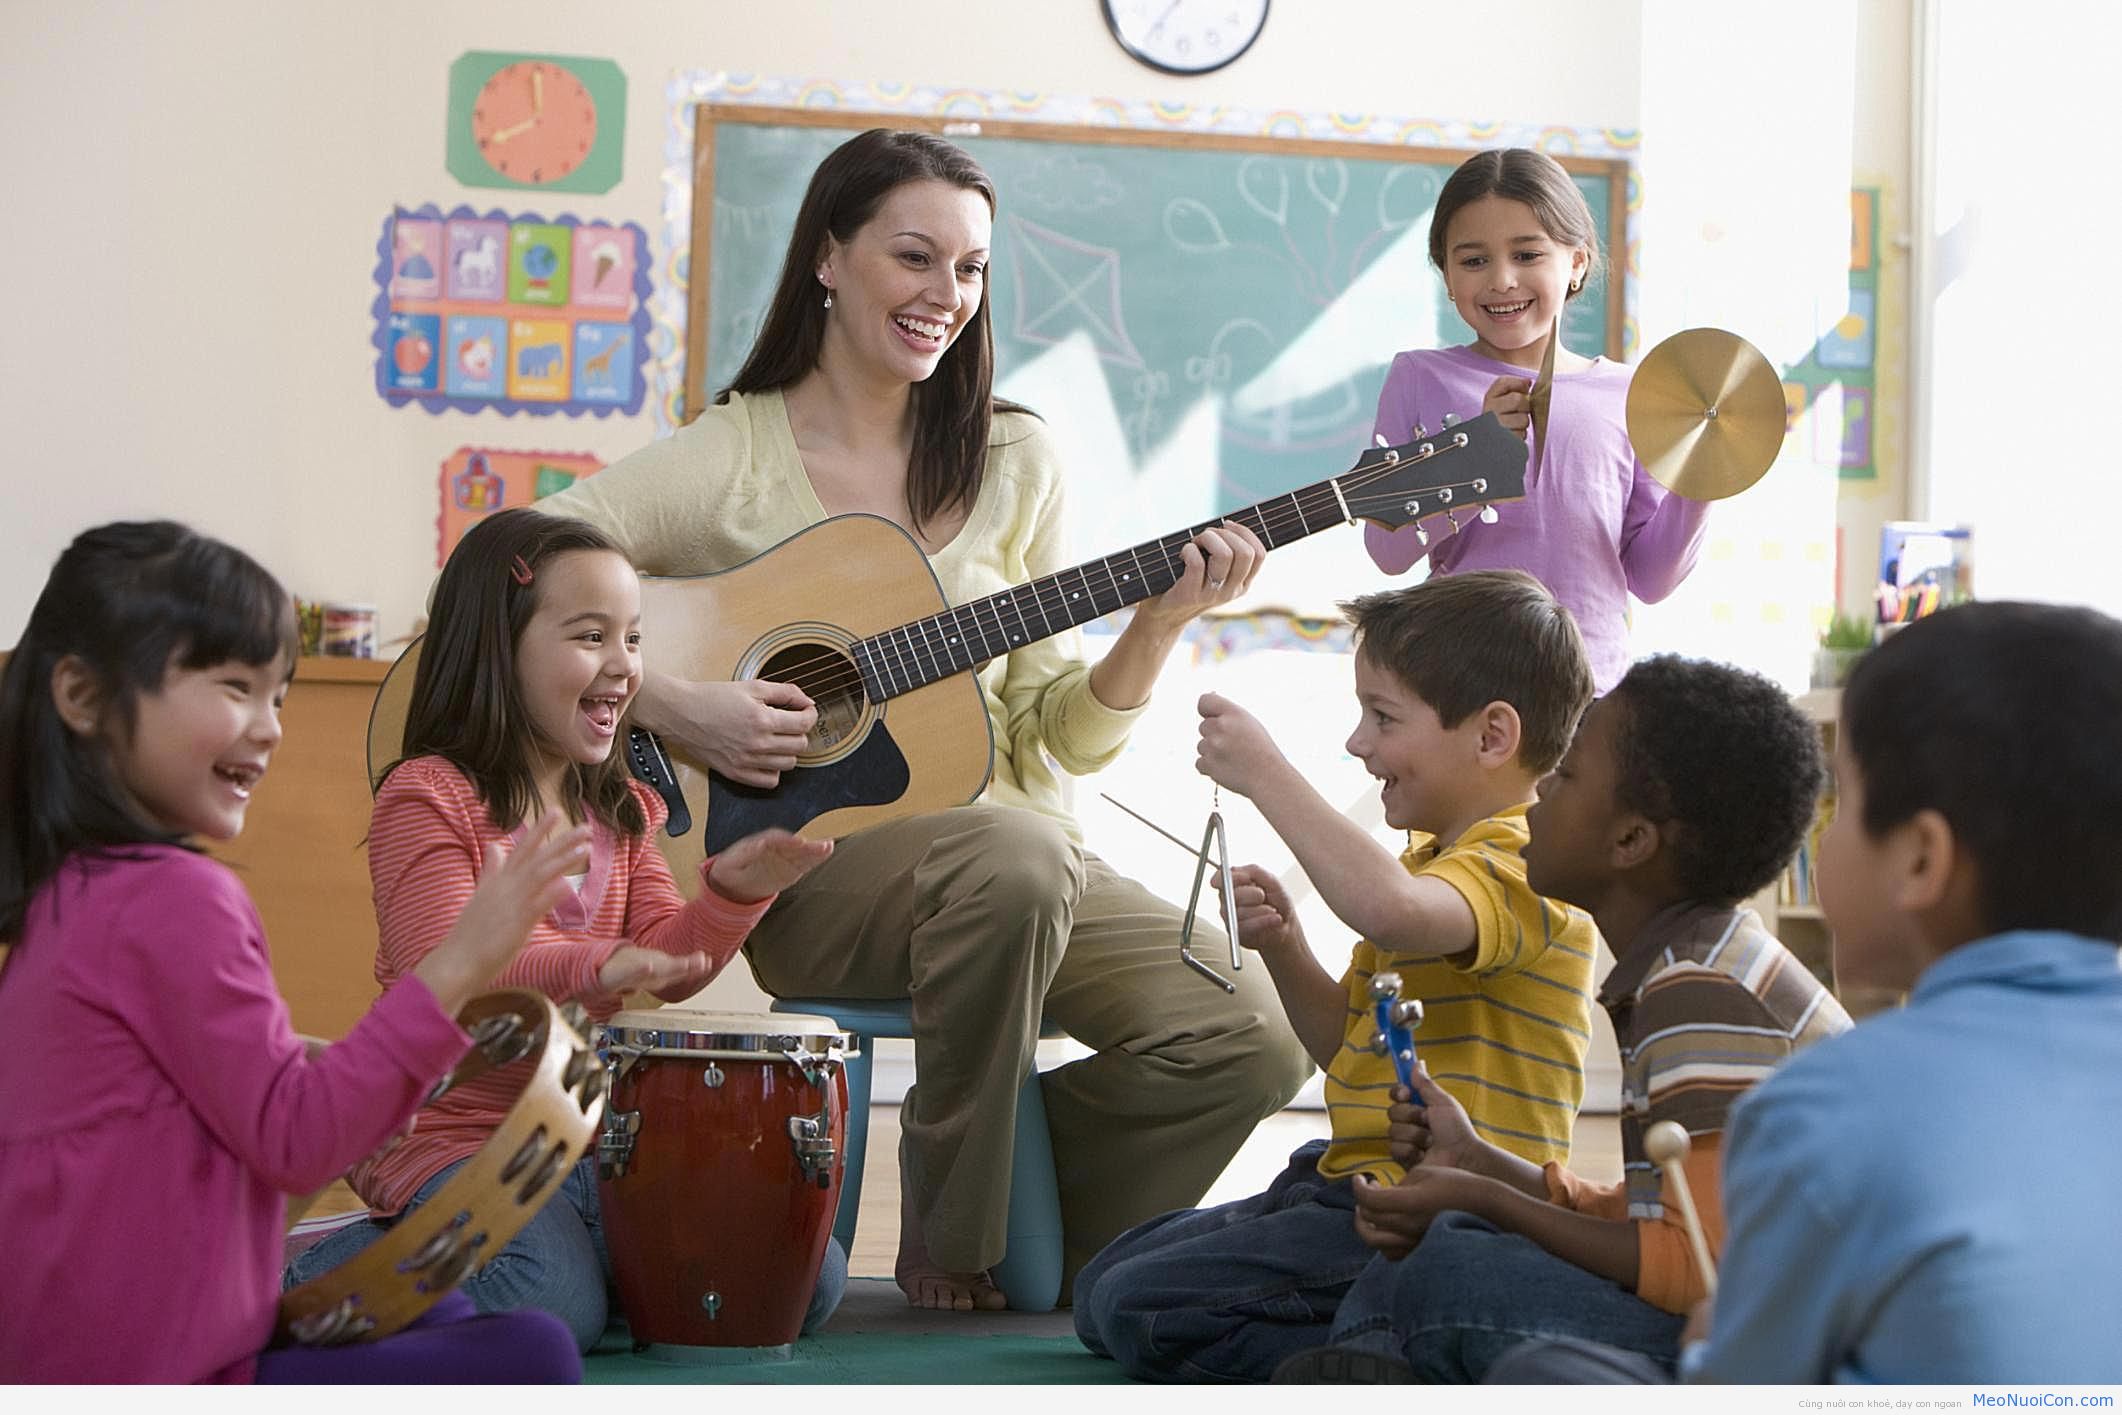   Học nhạc cụ giúp trẻ có hiểu biết về nhiều nền văn hóa khác nhau  